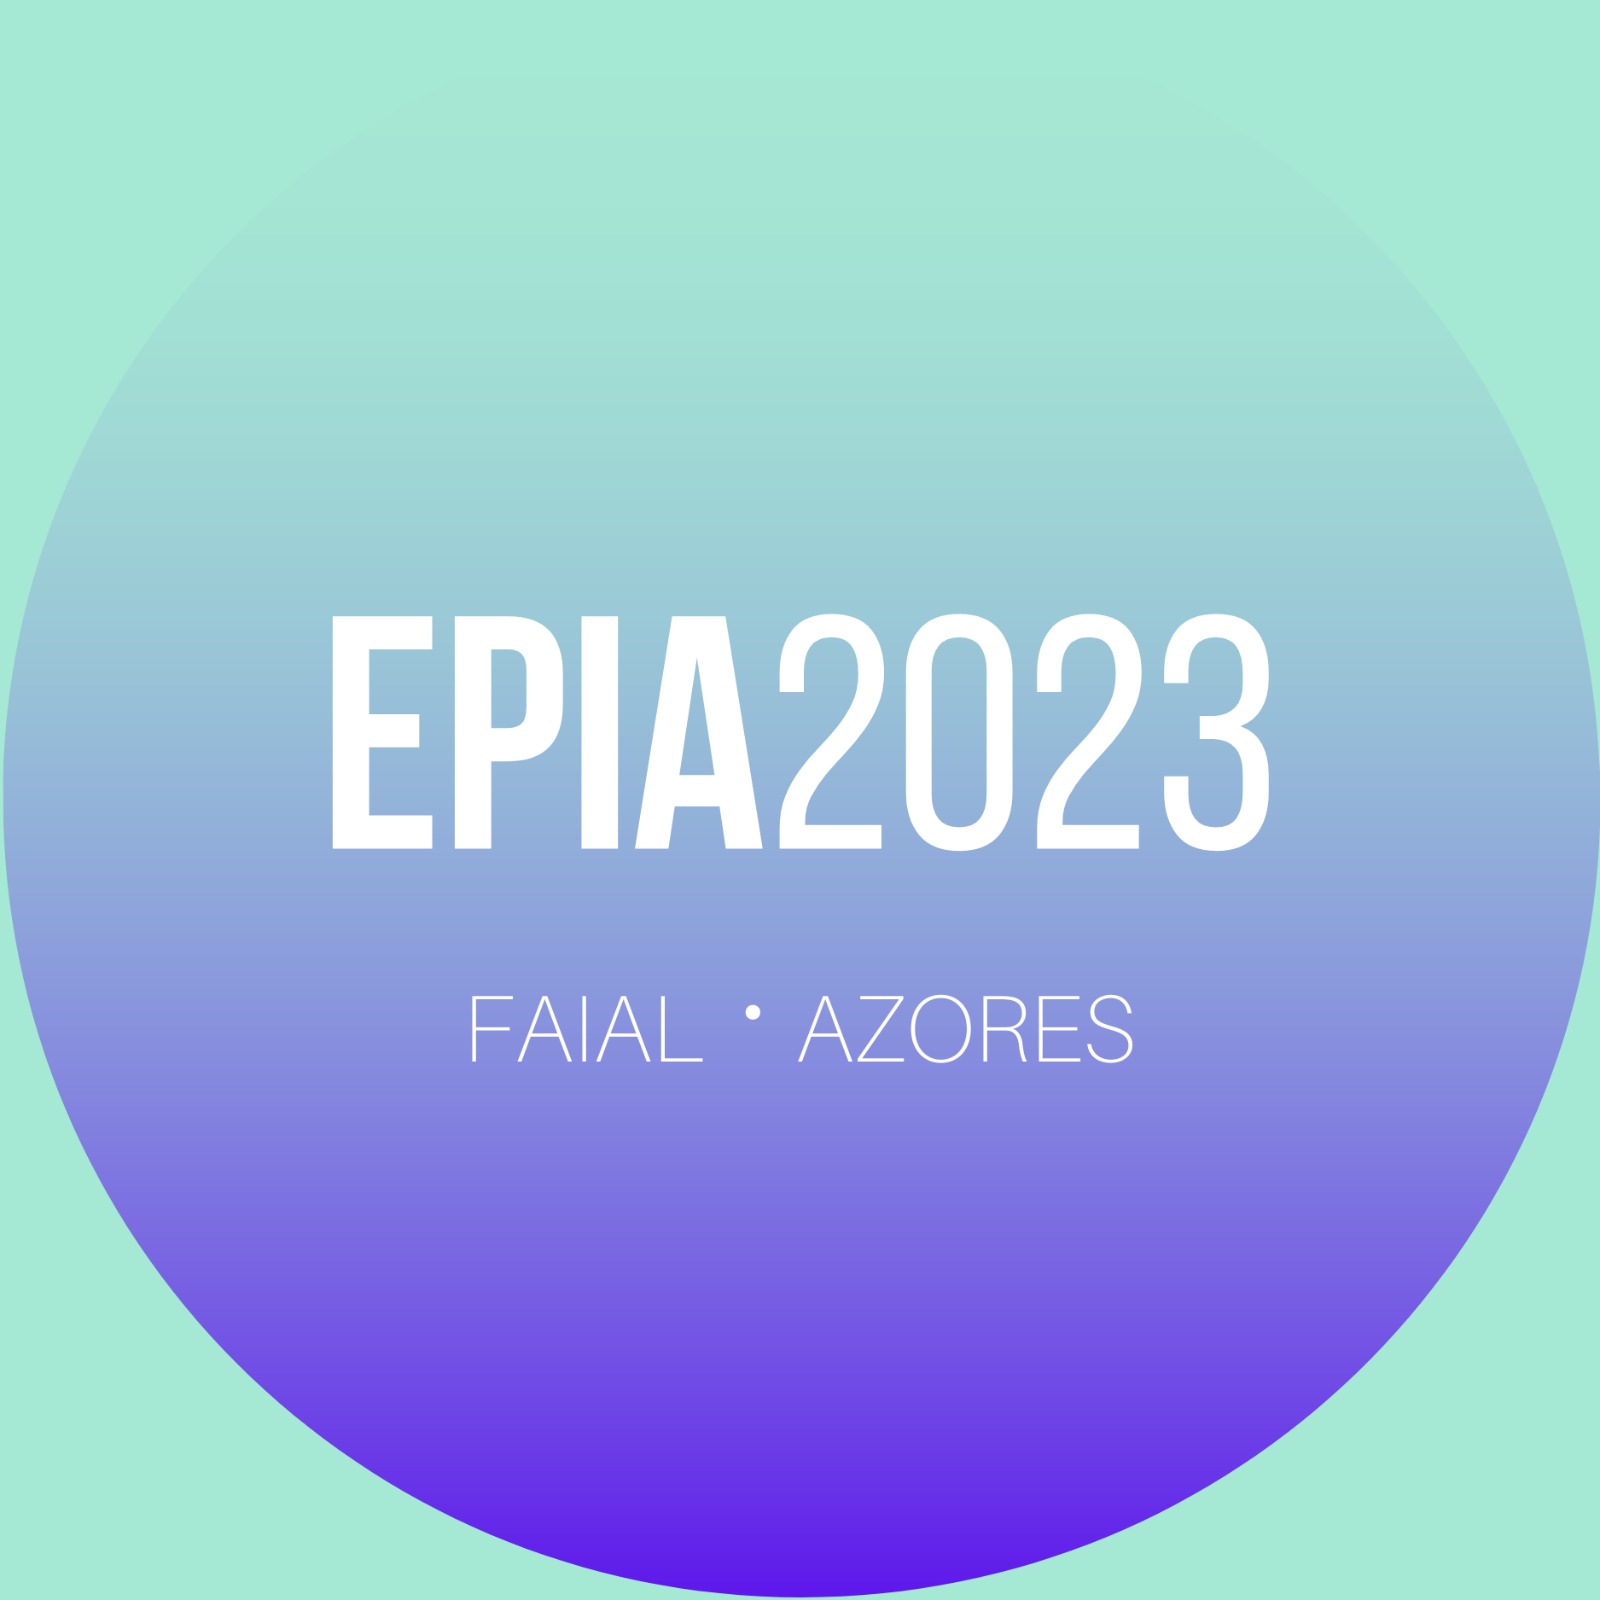 EPIA 2023